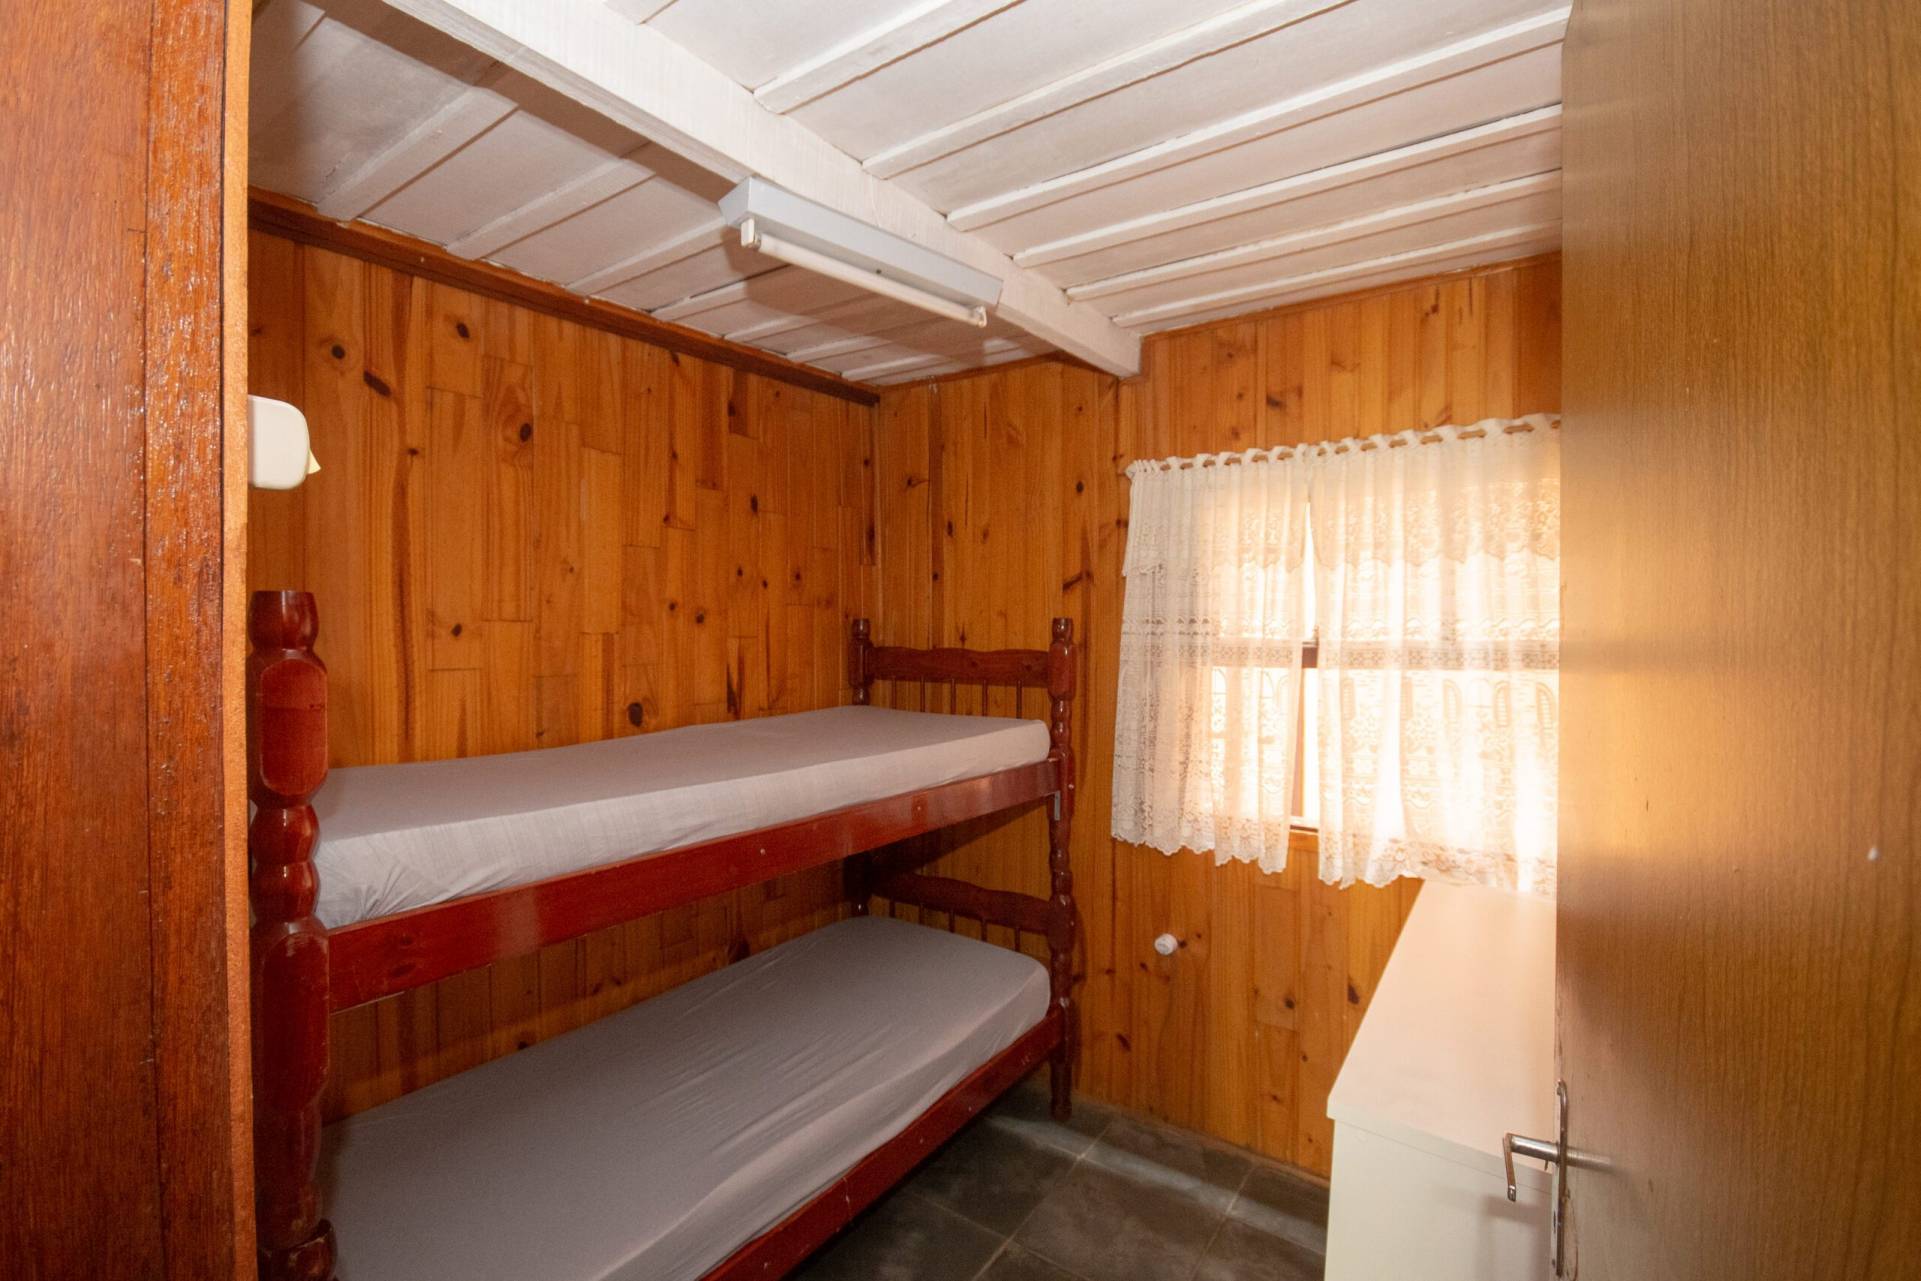 2 quartos térreos - 1 cama de casal e 1 beliche